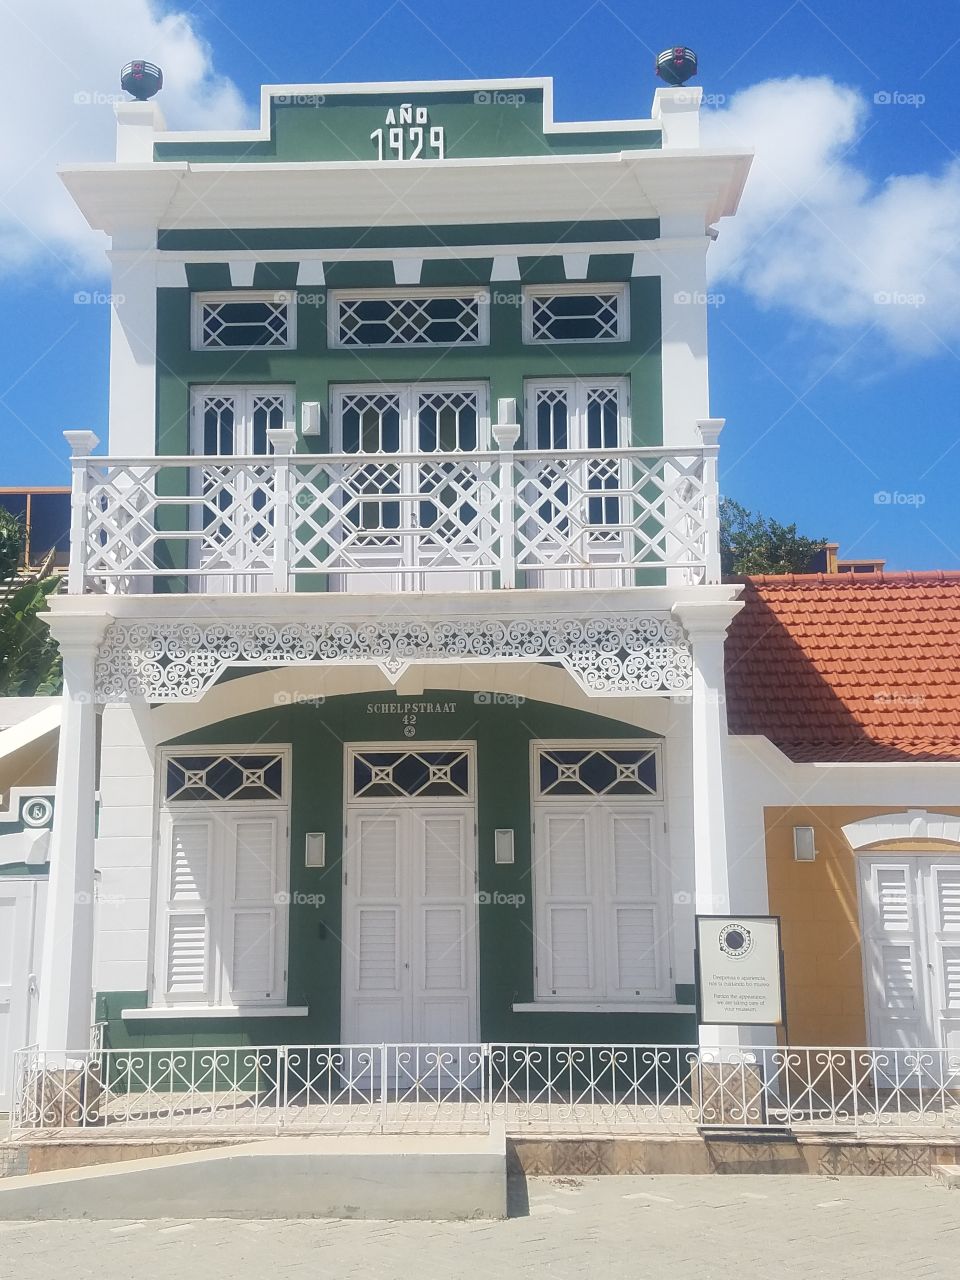 Historical Architecture in Aruba